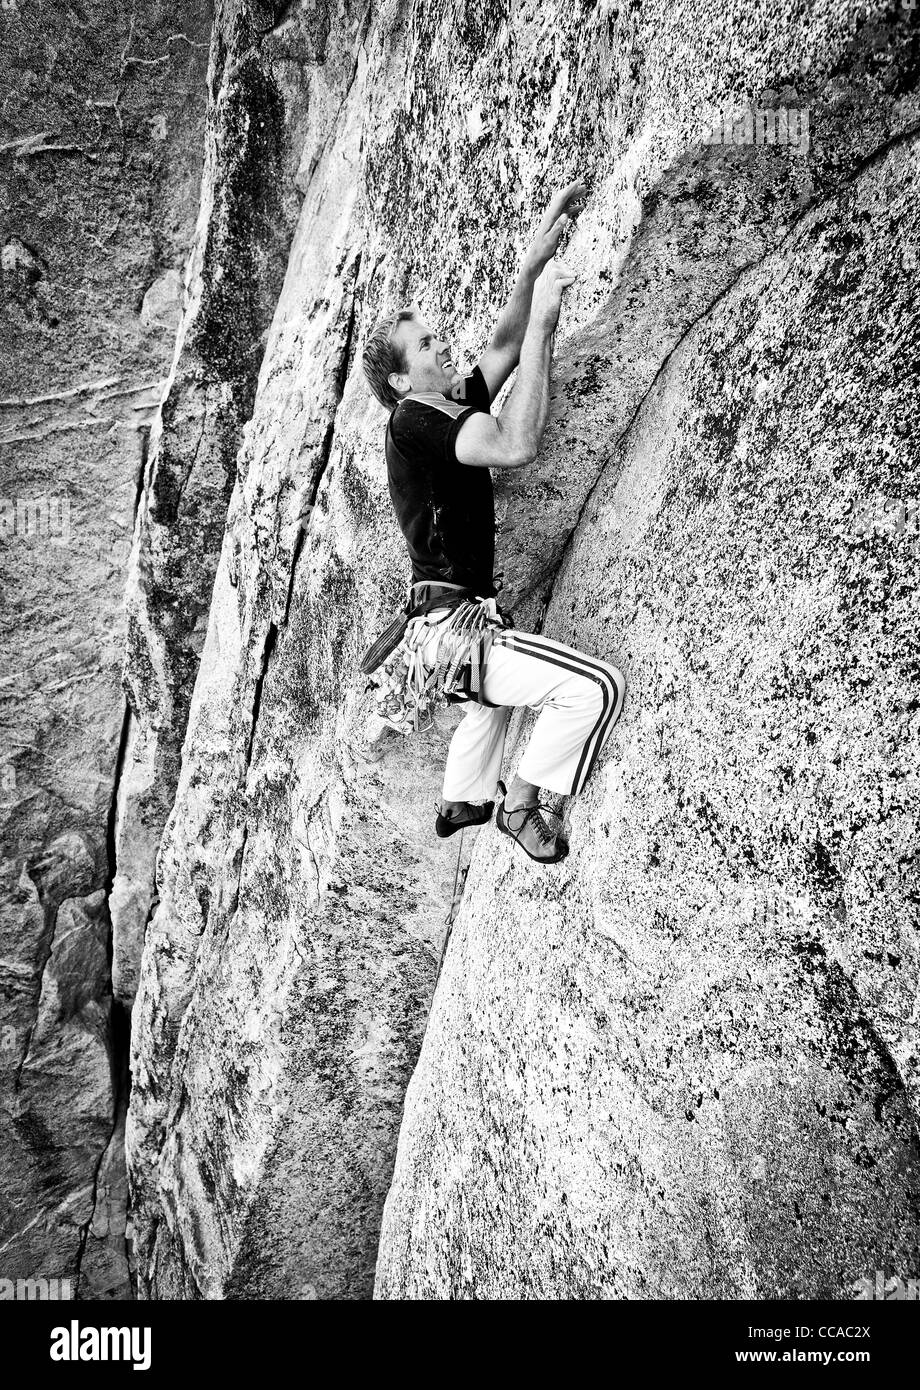 Männliche Kletterer kämpft für seinen nächsten Griff auf einem anspruchsvollen Aufstieg. Stockfoto